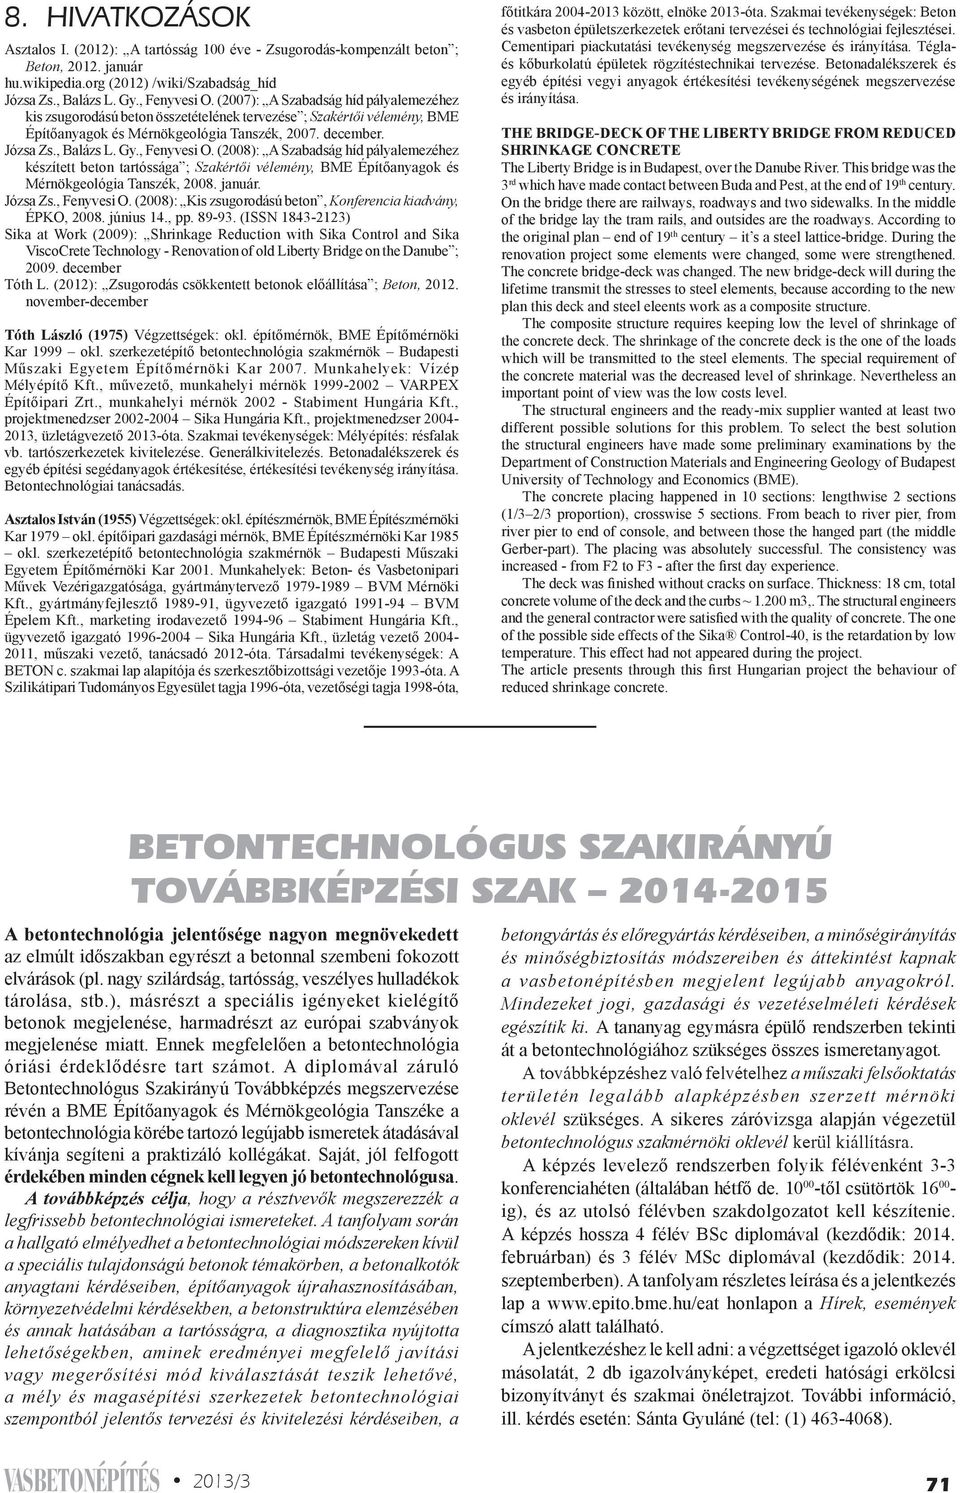 , Fenyvesi O. (2008): A Szabadság híd pályalemezéhez készített beton tartóssága ; Szakértői vélemény, BME Építőanyagok és Mérnökgeológia Tanszék, 2008. január. Józsa Zs., Fenyvesi O. (2008): Kis zsugorodású beton, Konferencia kiadvány, ÉPKO, 2008.